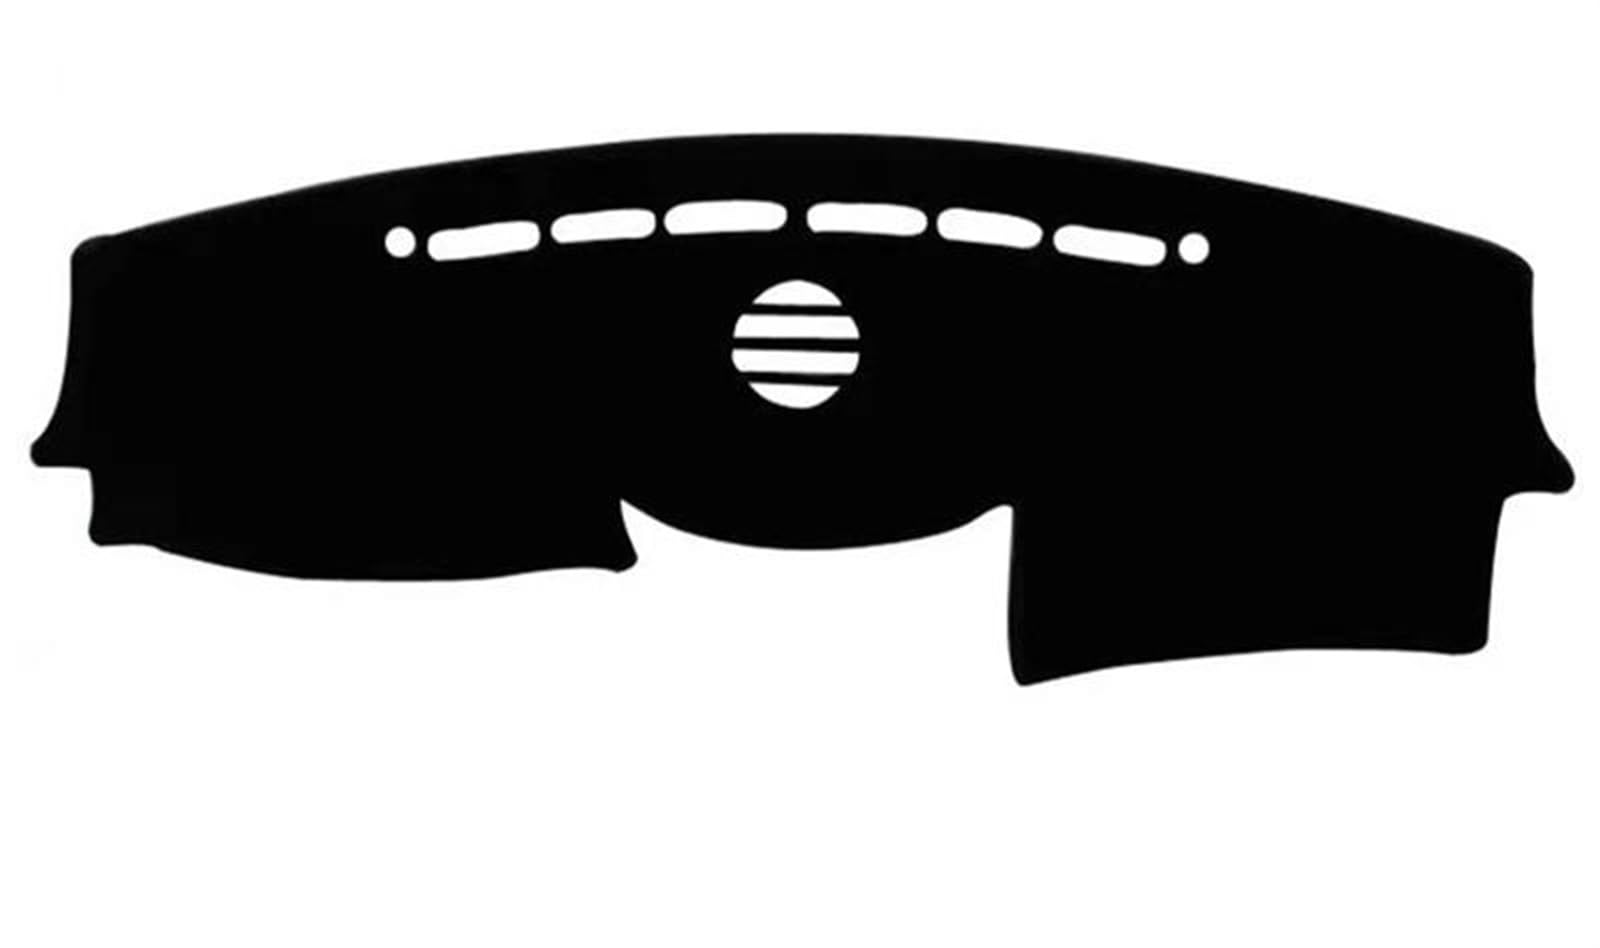 Auto-Armaturenbrettmatte Für Hyundai Für Veracruz IX55 2006 2007 2008-2015 Dashboard Abdeckung Matte Pad Sonnenschirm Instrument Kissen Teppich Zubehör Verdunkelungsmatte Für Das Armaturenbrett(Black von YFZNCPZI